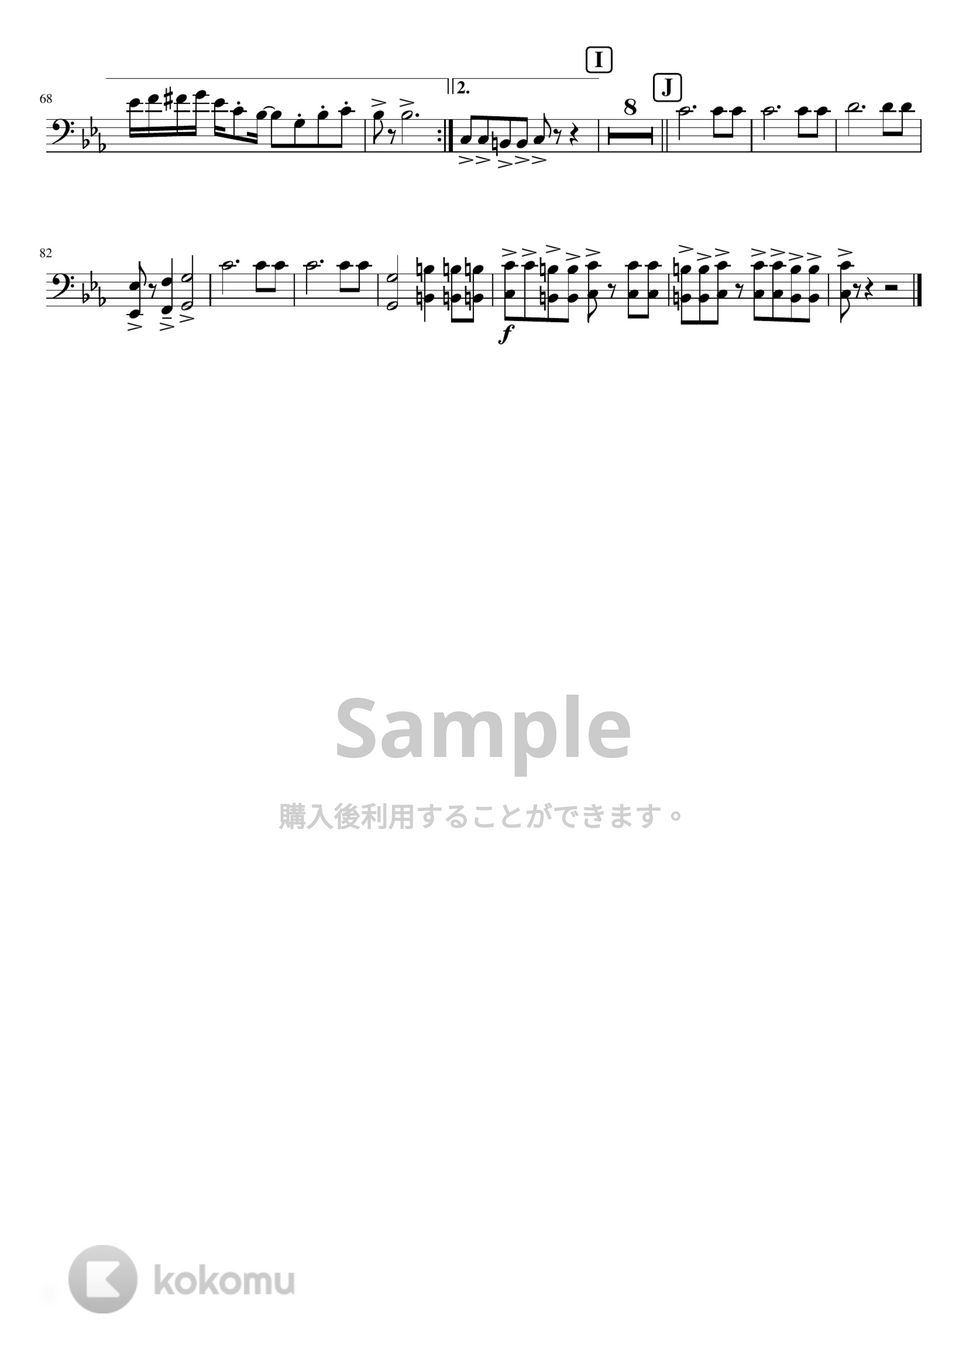 おジャ魔女どれみ - おジャ魔女カーニバル!! (吹奏楽少人数ユーフォ) by orinpia music